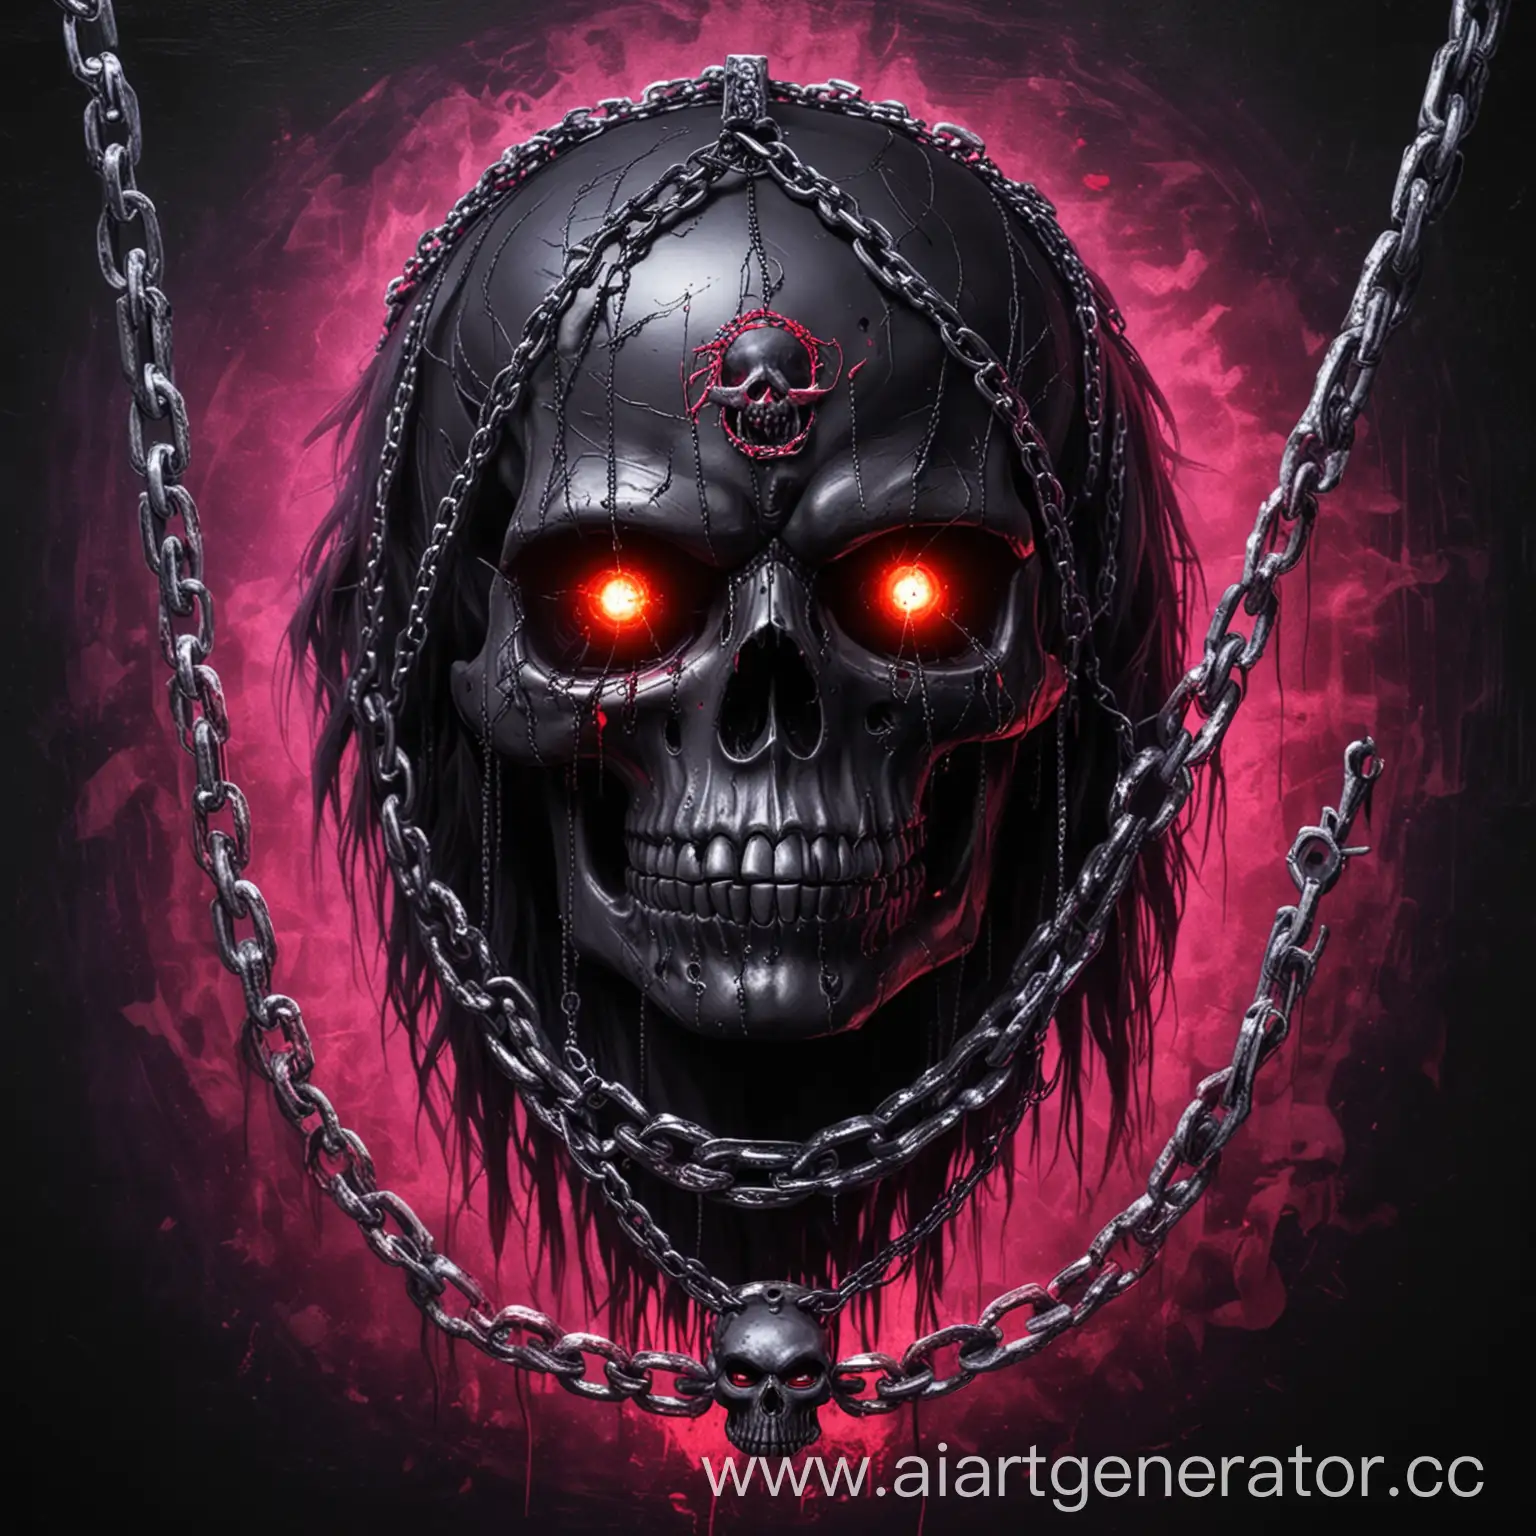 Sinister-Black-Skull-Enshrouded-in-Metallic-Chains-on-Violet-Neon-Background